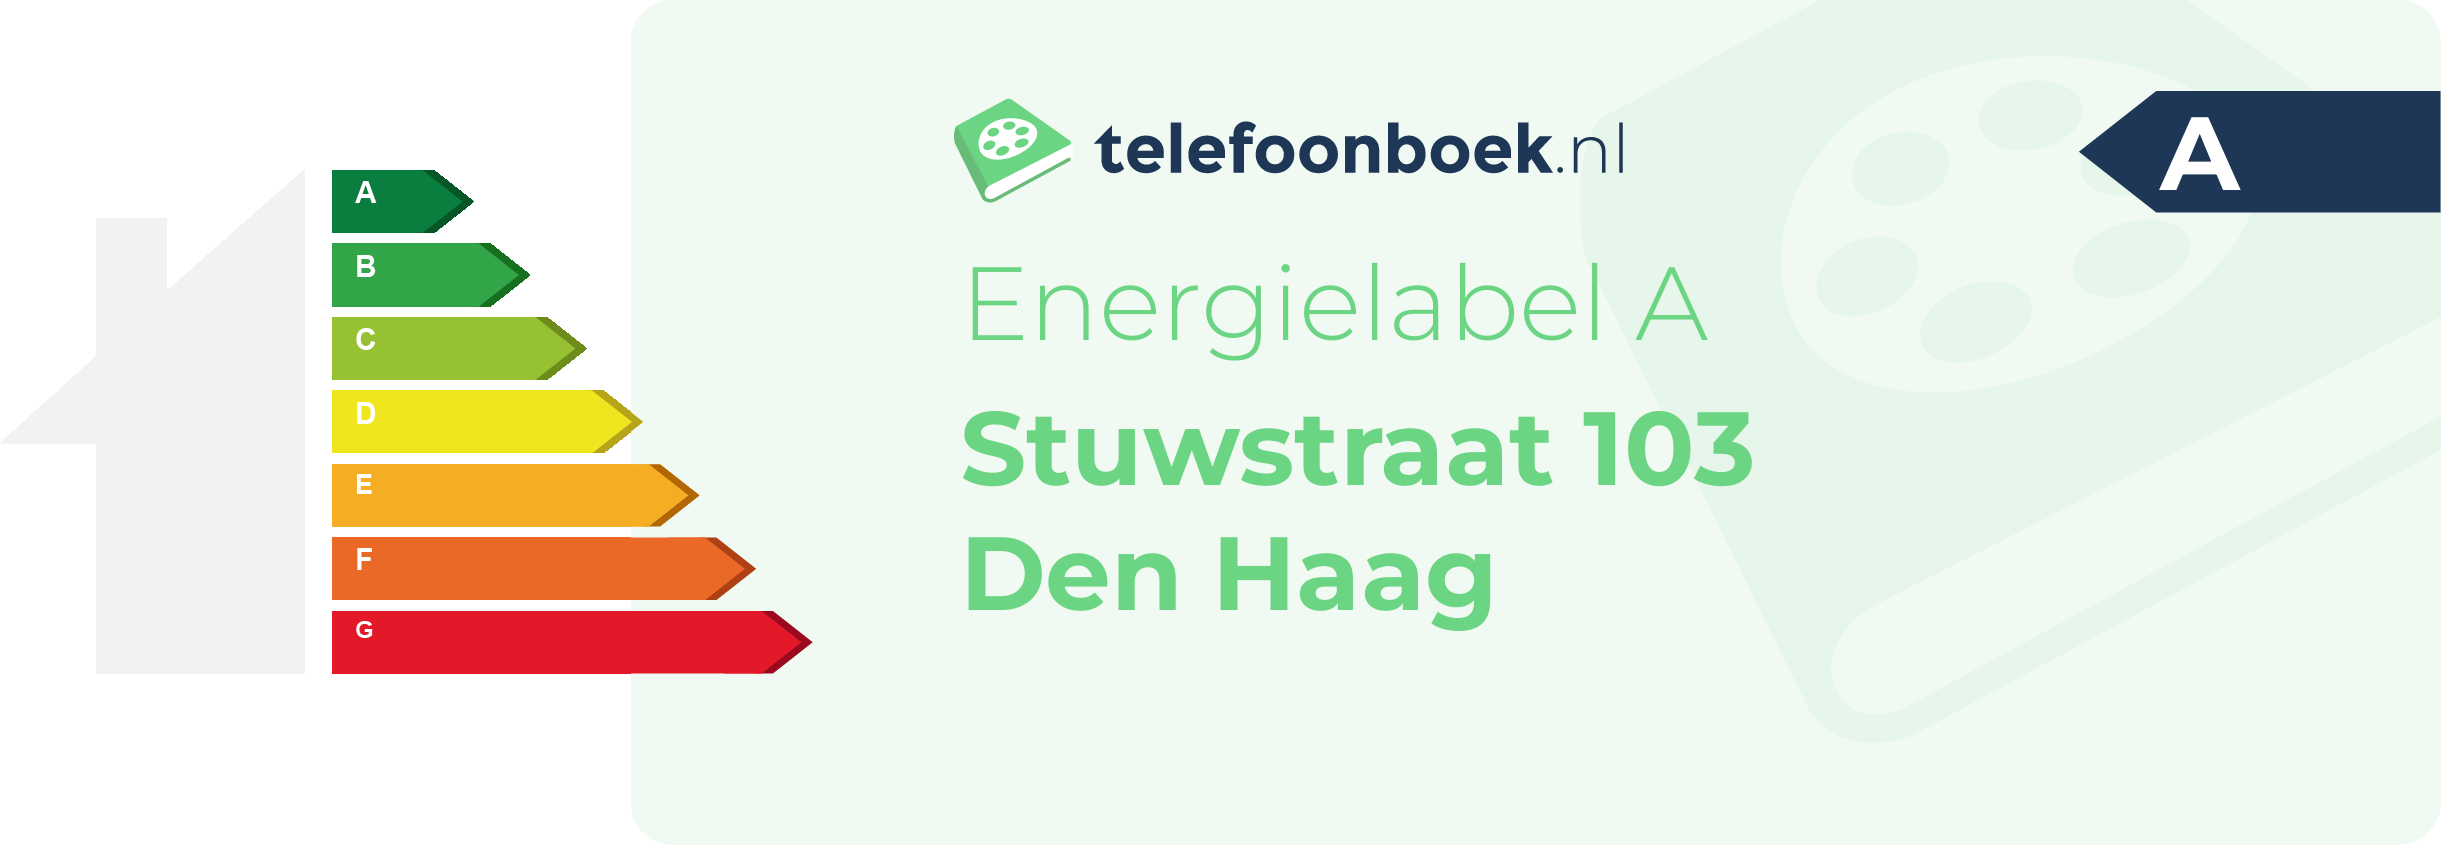 Energielabel Stuwstraat 103 Den Haag